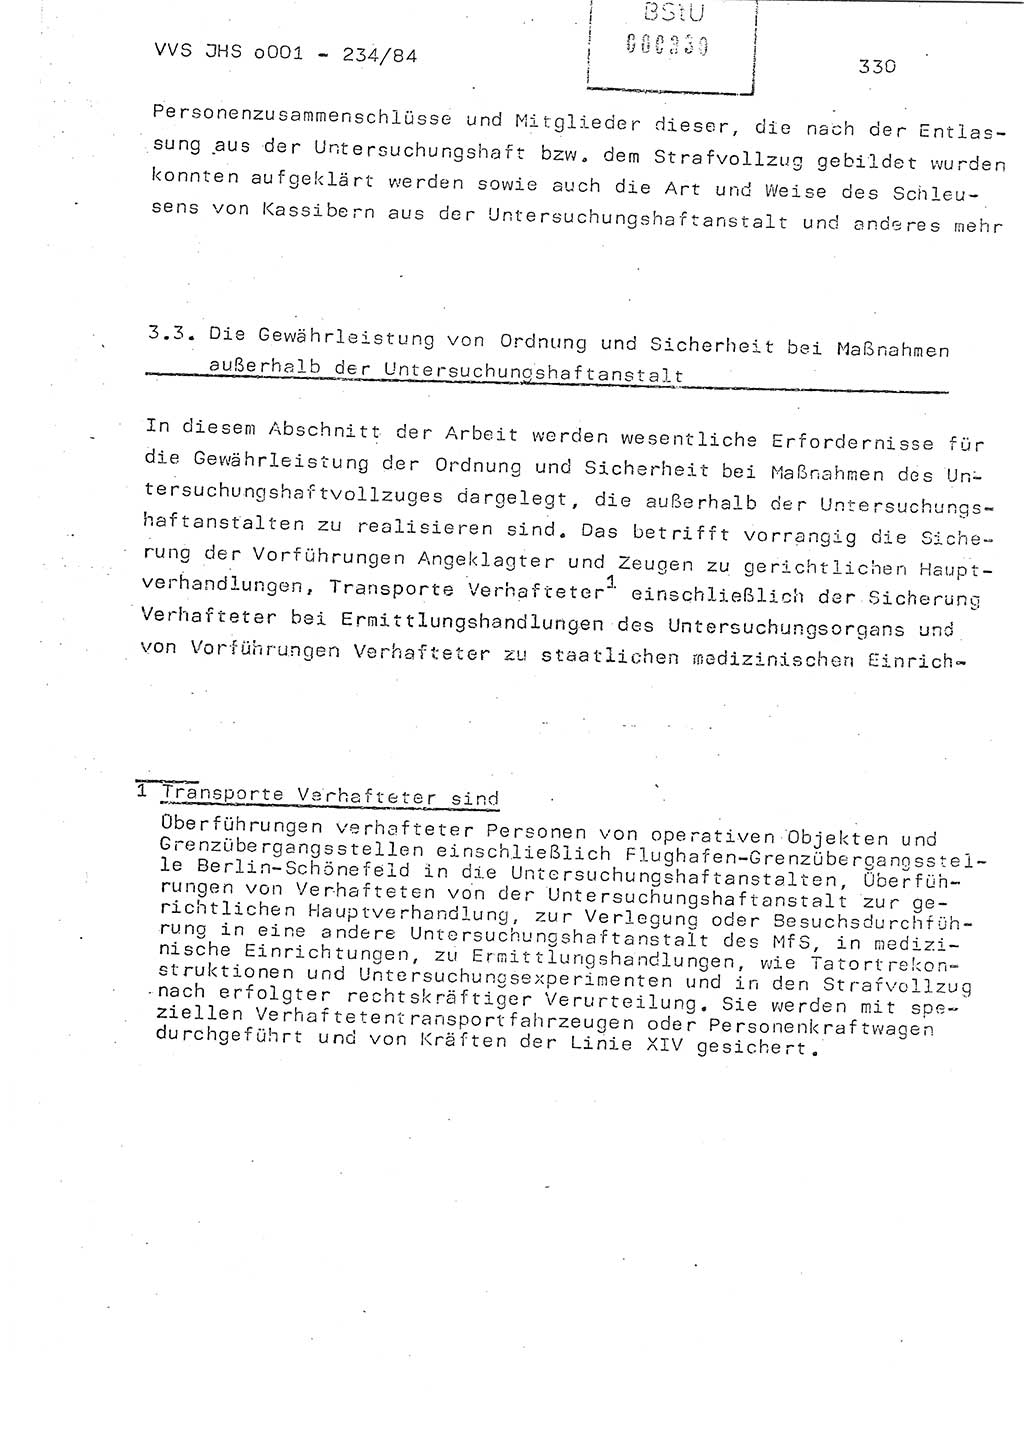 Dissertation Oberst Siegfried Rataizick (Abt. ⅩⅣ), Oberstleutnant Volkmar Heinz (Abt. ⅩⅣ), Oberstleutnant Werner Stein (HA Ⅸ), Hauptmann Heinz Conrad (JHS), Ministerium für Staatssicherheit (MfS) [Deutsche Demokratische Republik (DDR)], Juristische Hochschule (JHS), Vertrauliche Verschlußsache (VVS) o001-234/84, Potsdam 1984, Seite 330 (Diss. MfS DDR JHS VVS o001-234/84 1984, S. 330)